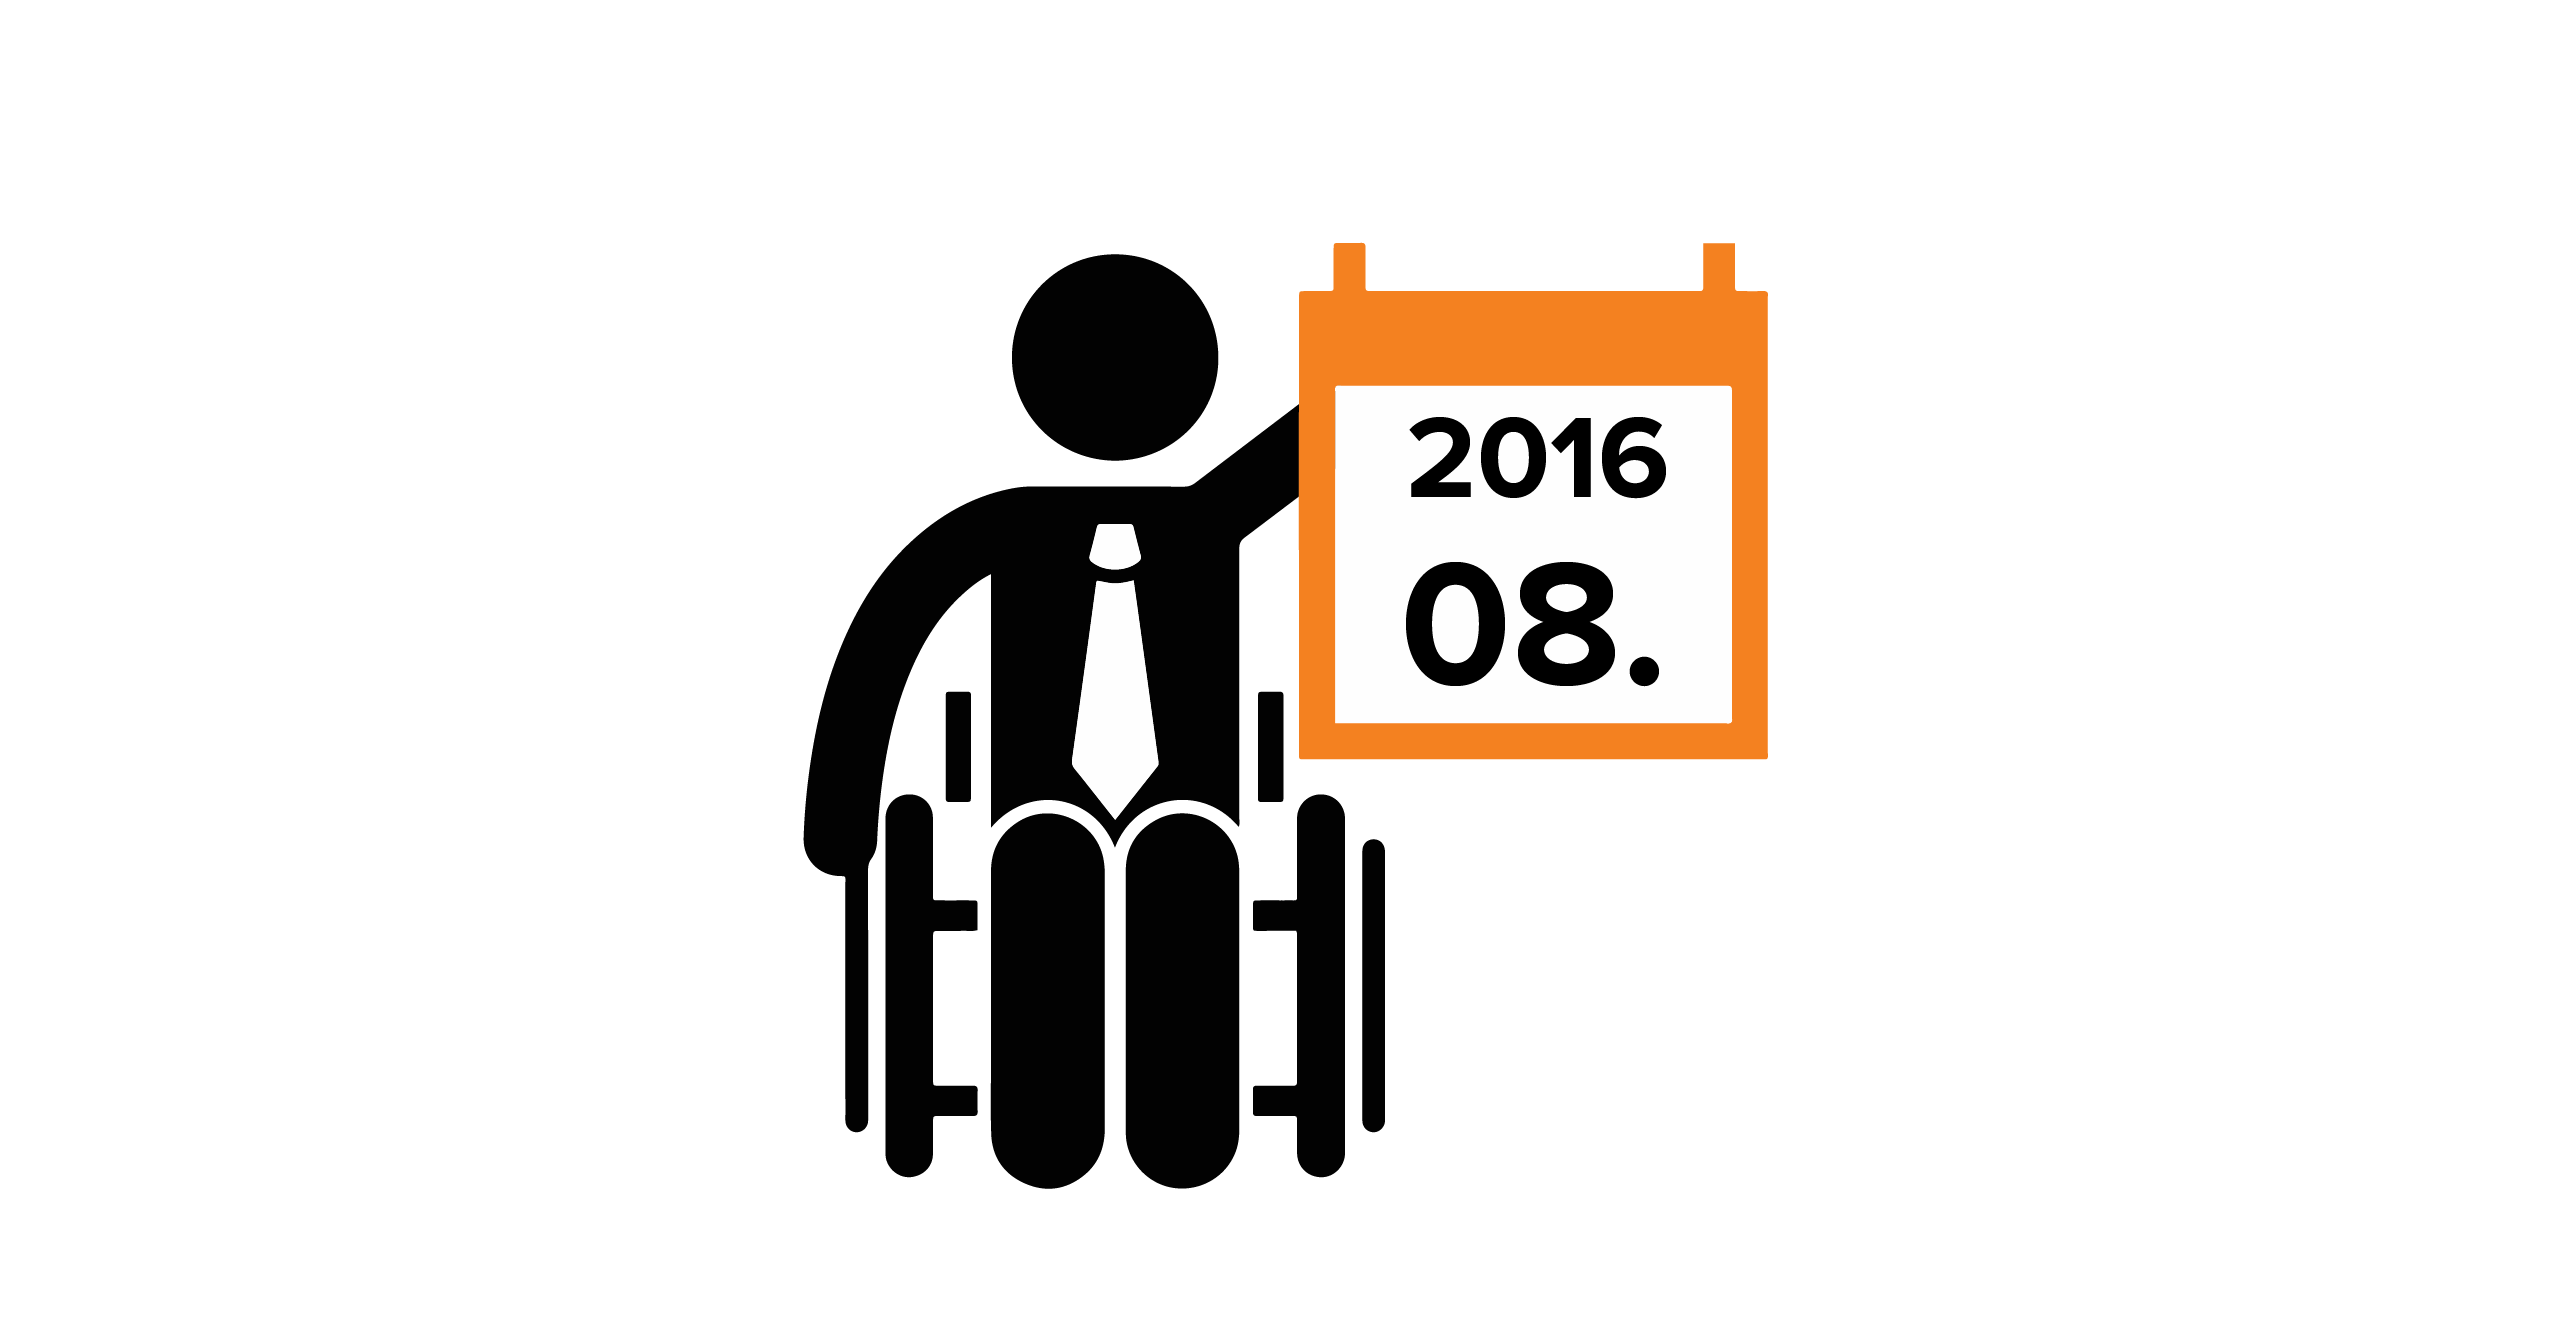 Na grafice człowiek na wózku, trzymający kalendarz z datą 08.2016